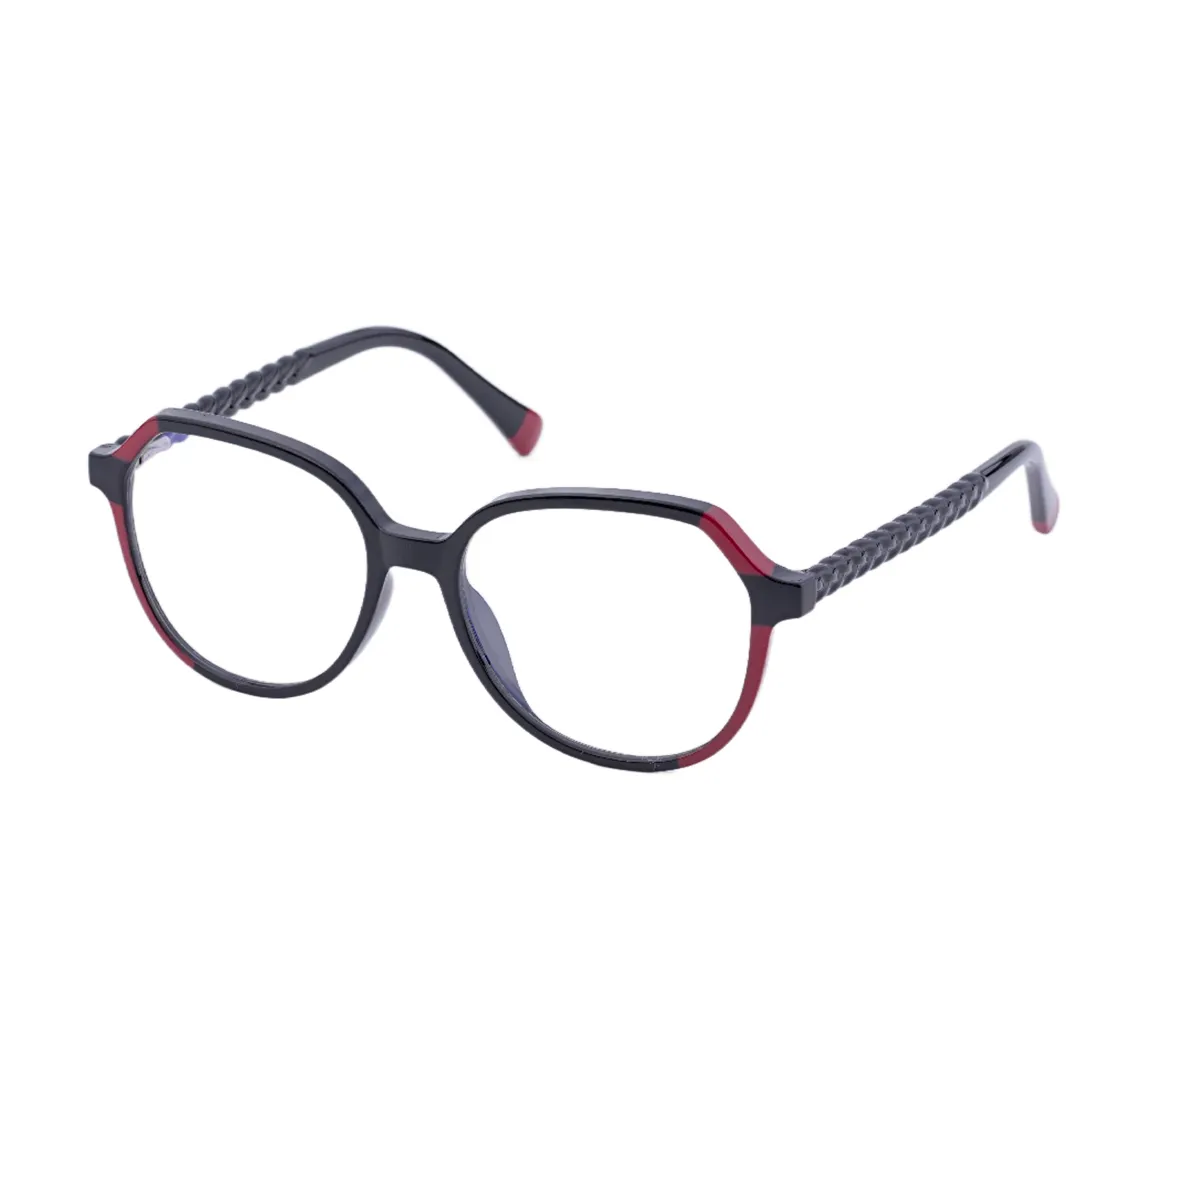 Fashion Geometric Black/Red Eyeglasses for Women